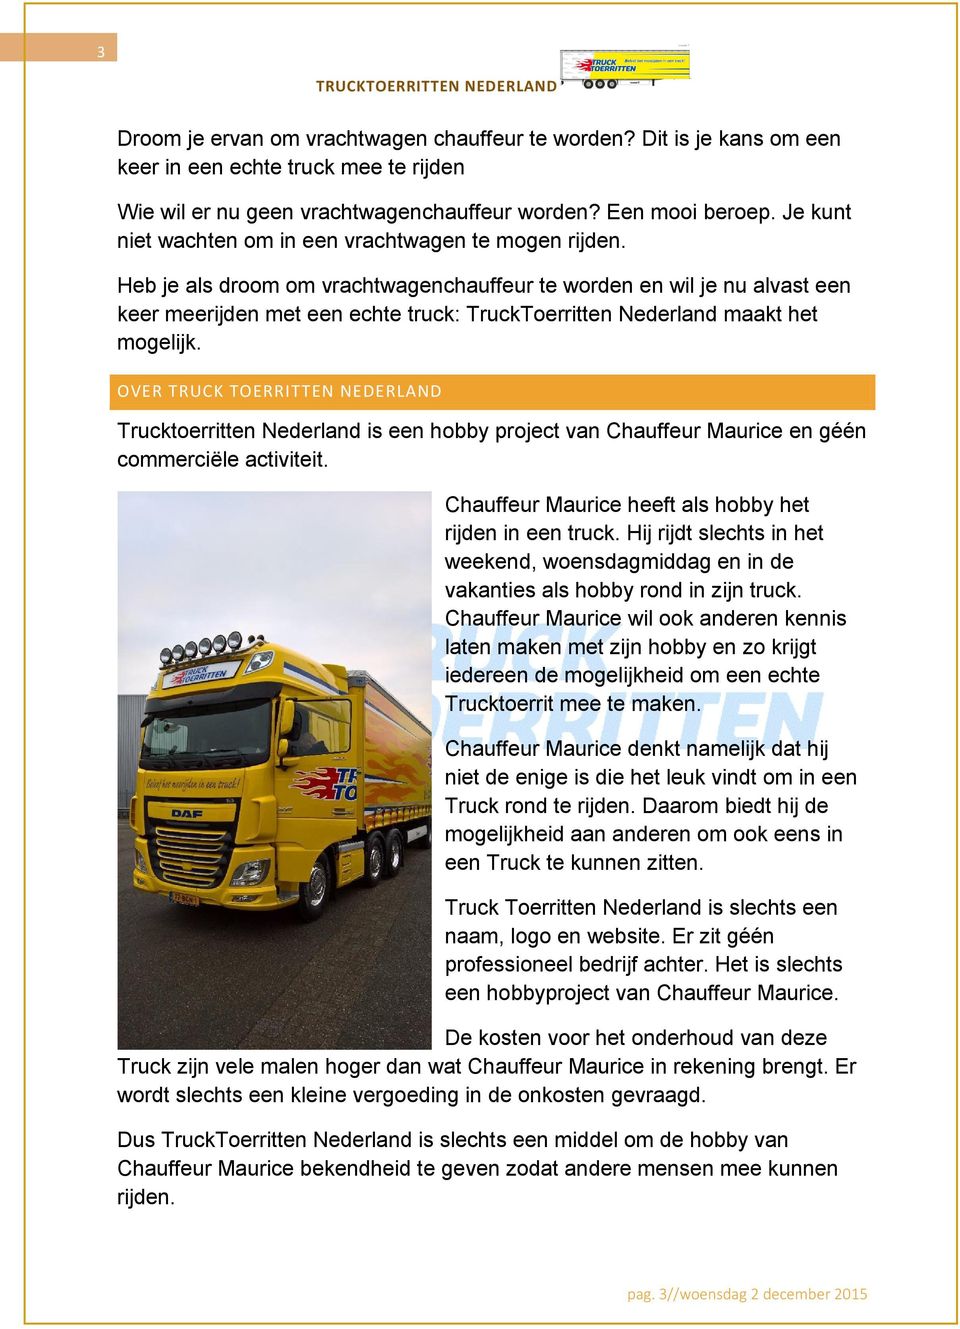 Heb je als droom om vrachtwagenchauffeur te worden en wil je nu alvast een keer meerijden met een echte truck: TruckToerritten Nederland maakt het mogelijk.